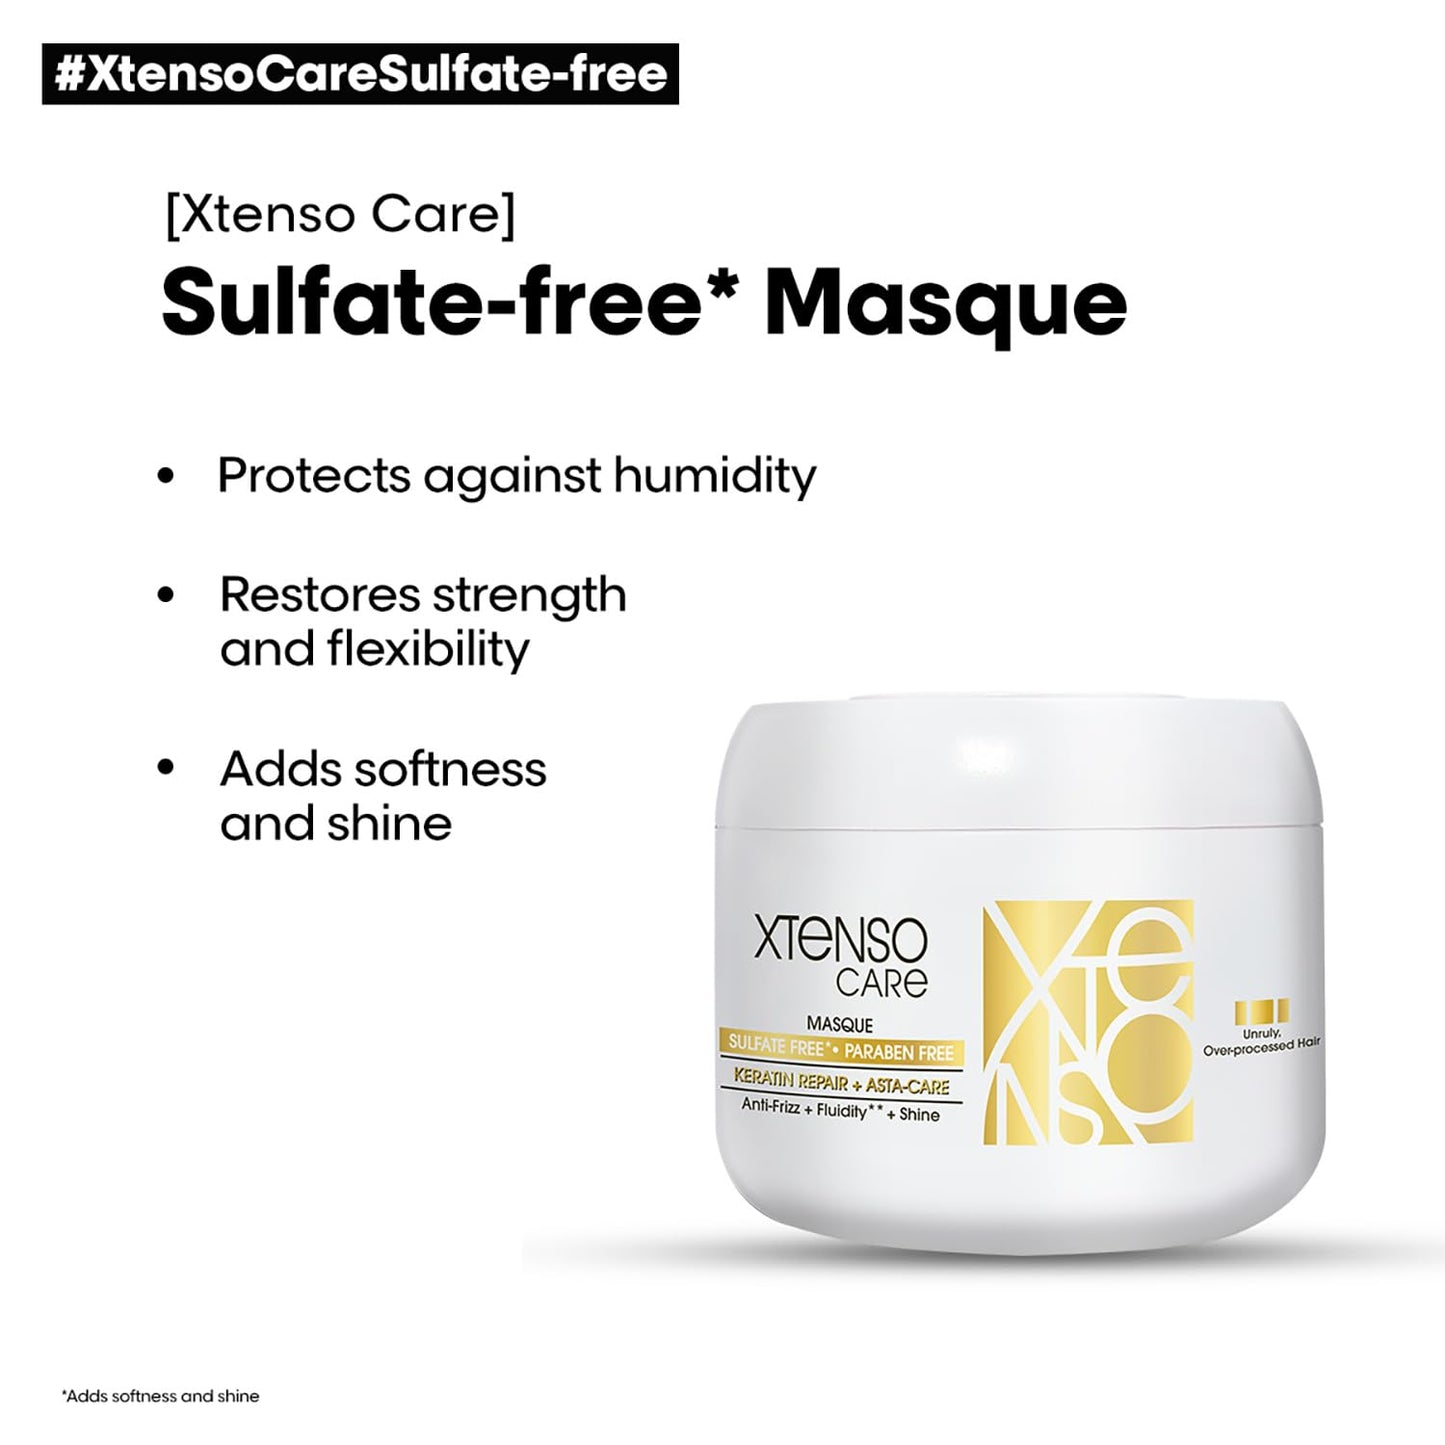 L'Oréal Professionnel Xtenso Care Sulfate-free* Masque 196g